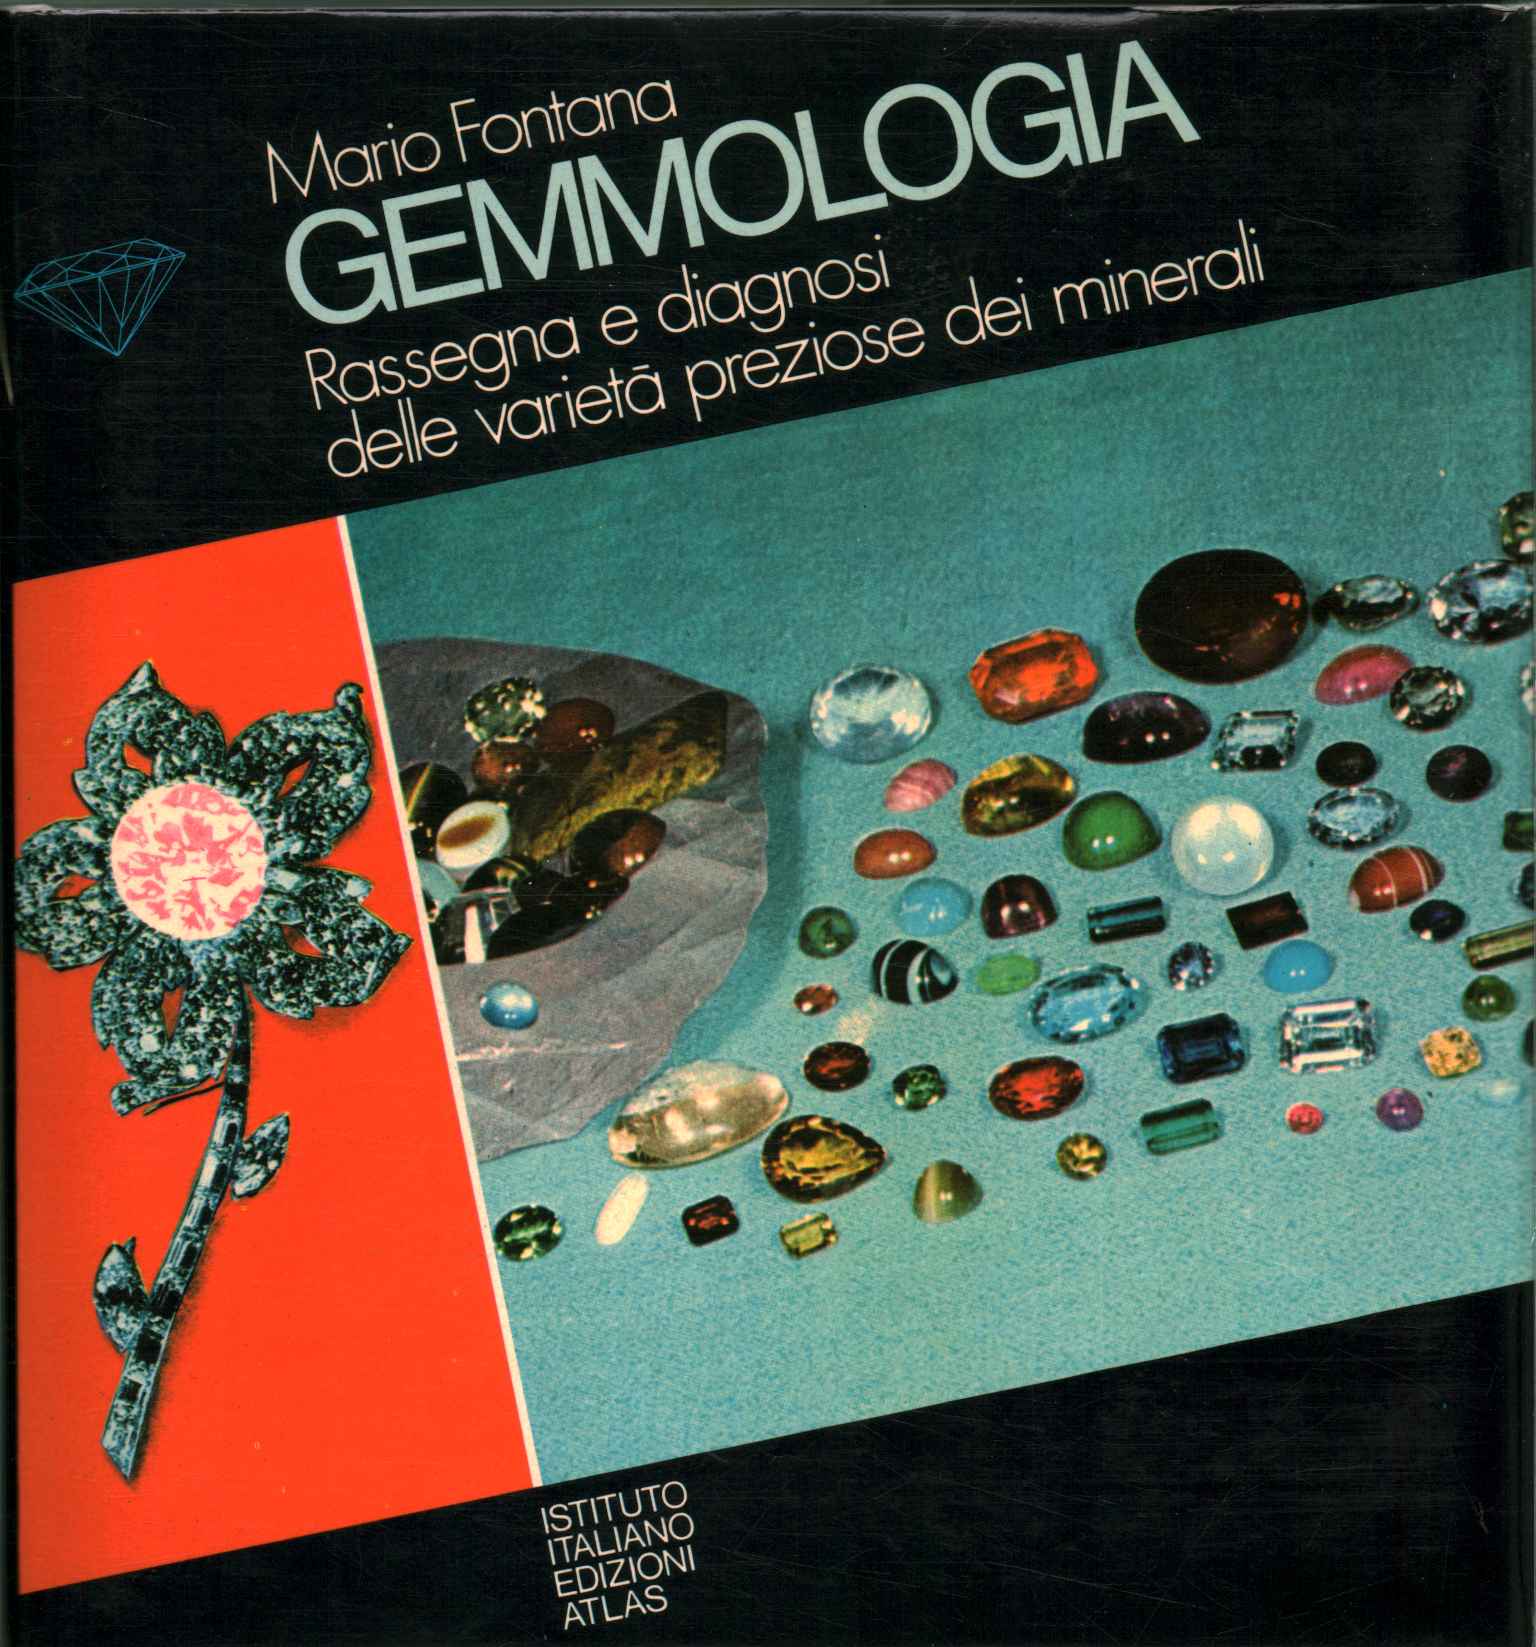 Gemología